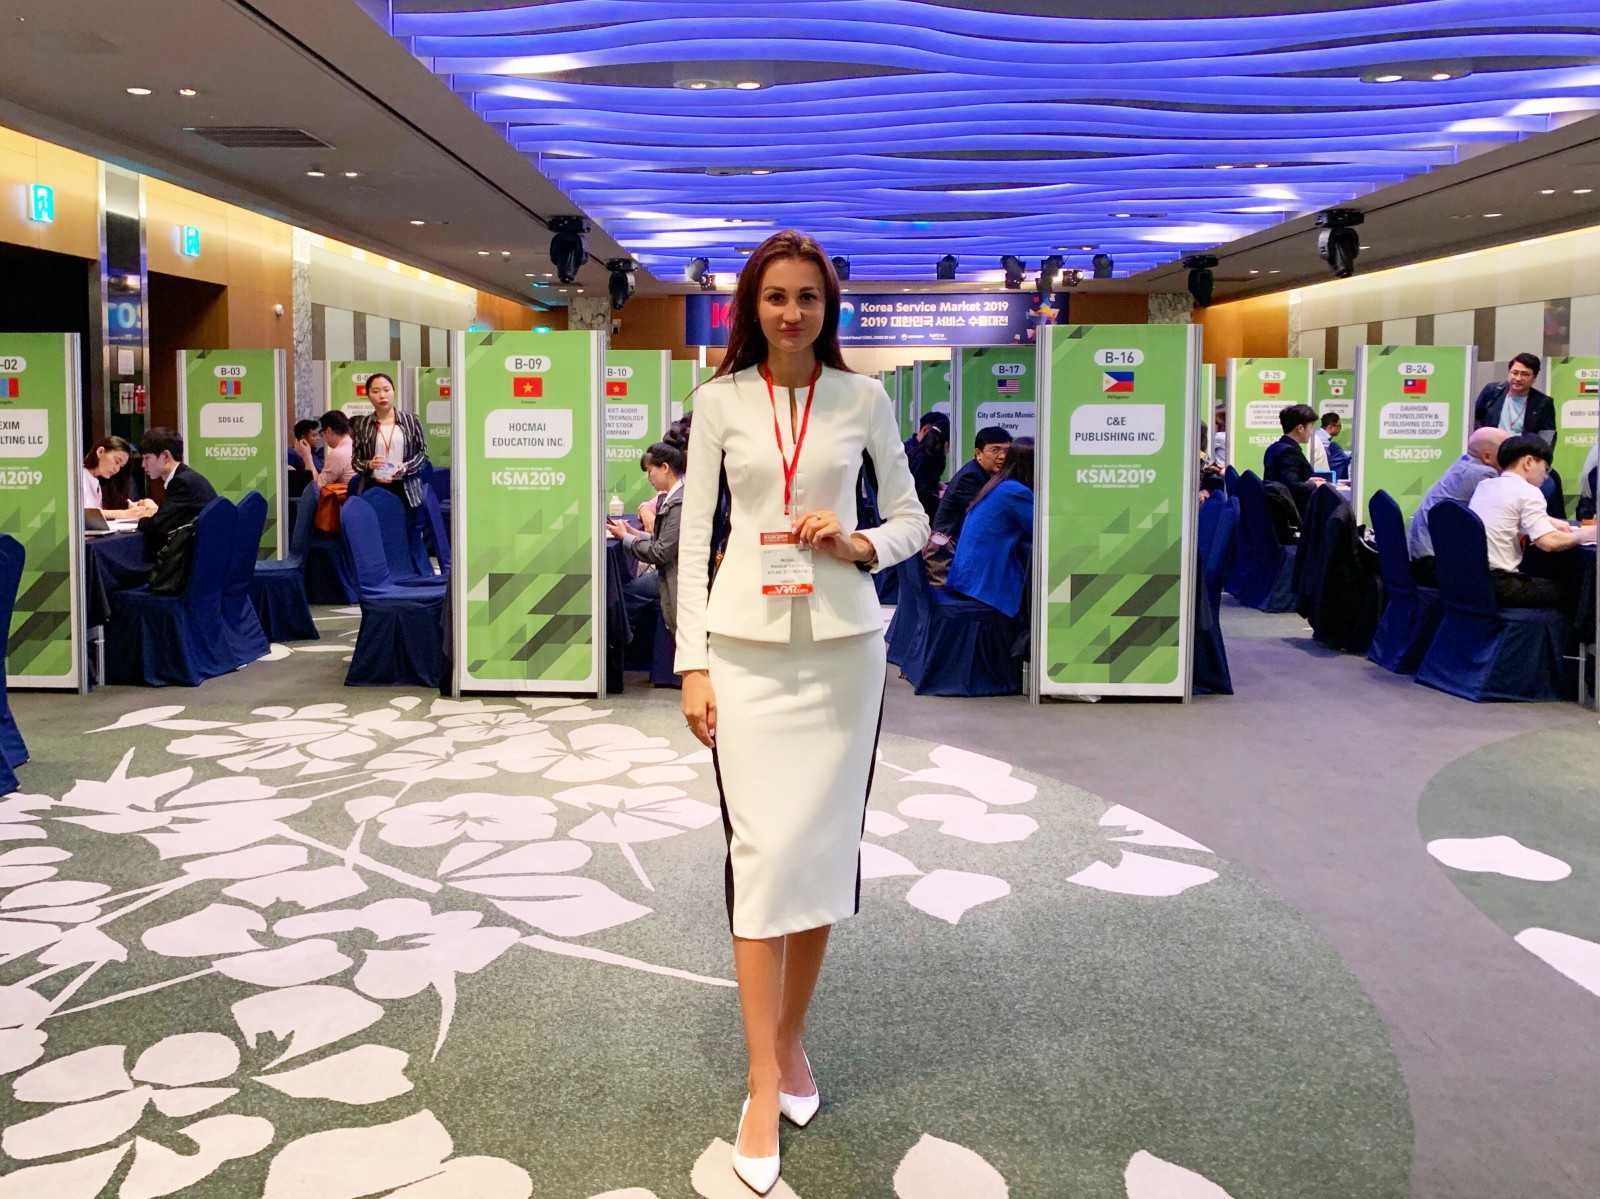 В этом году китайский производитель электроники Realme в первый раз примет участие в самой престижной выставке гаджетов  IFA Такими сведениями поделился Мадхав Шет